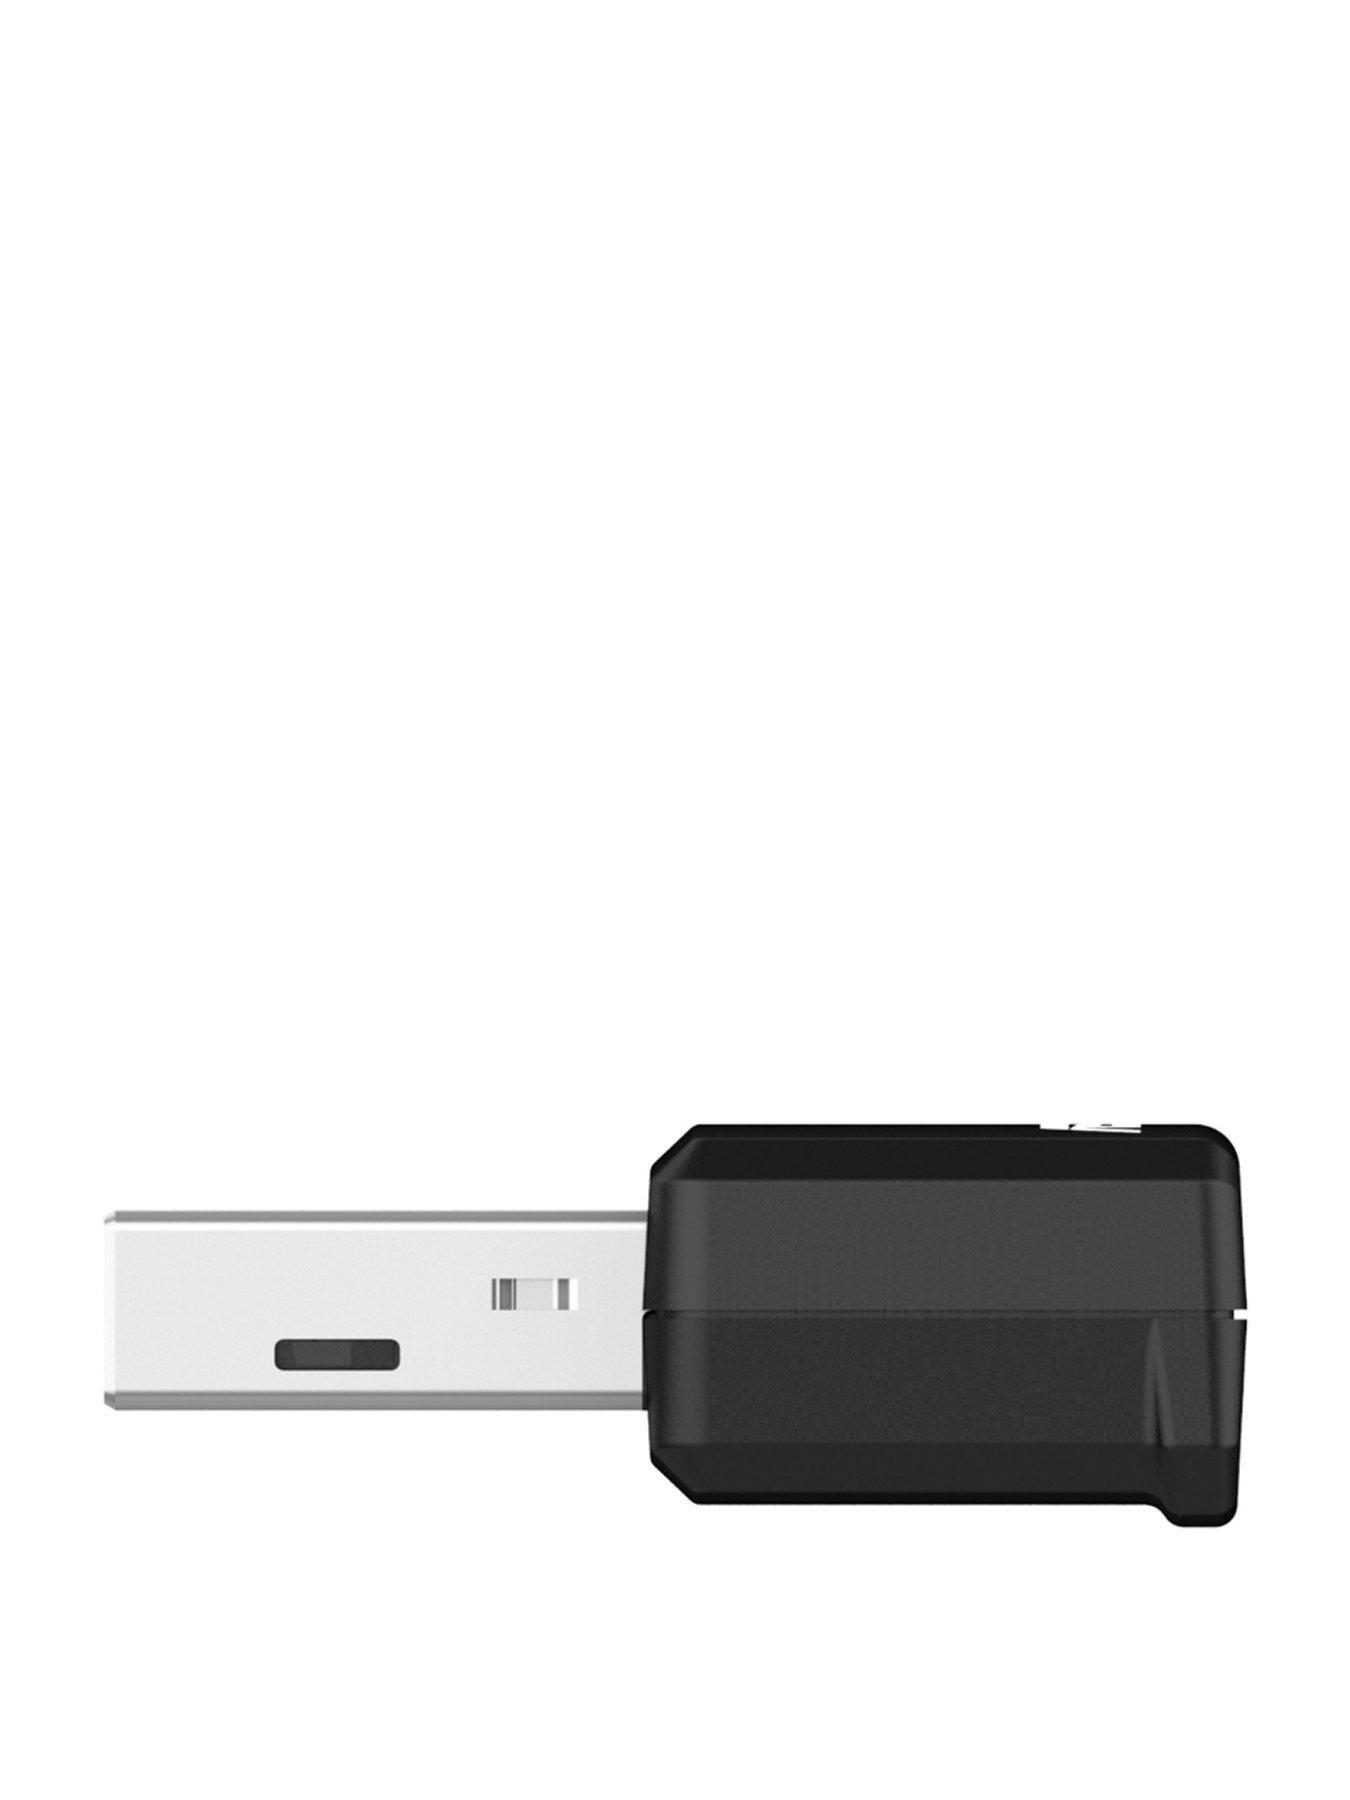 Asus USB-AX55 Nano Dual Band Wireless: Với công nghệ wifi 6 thế hệ mới nhất, Asus USB-AX55 Nano Dual Band Wireless mang đến tốc độ kết nối siêu nhanh và ổn định hơn bao giờ hết. Tích hợp công nghệ MU-MIMO cùng bởi chống nhiễu tốt, sản phẩm là sự lựa chọn tuyệt vời cho những người dùng đòi hỏi kết nối internet cao cấp.